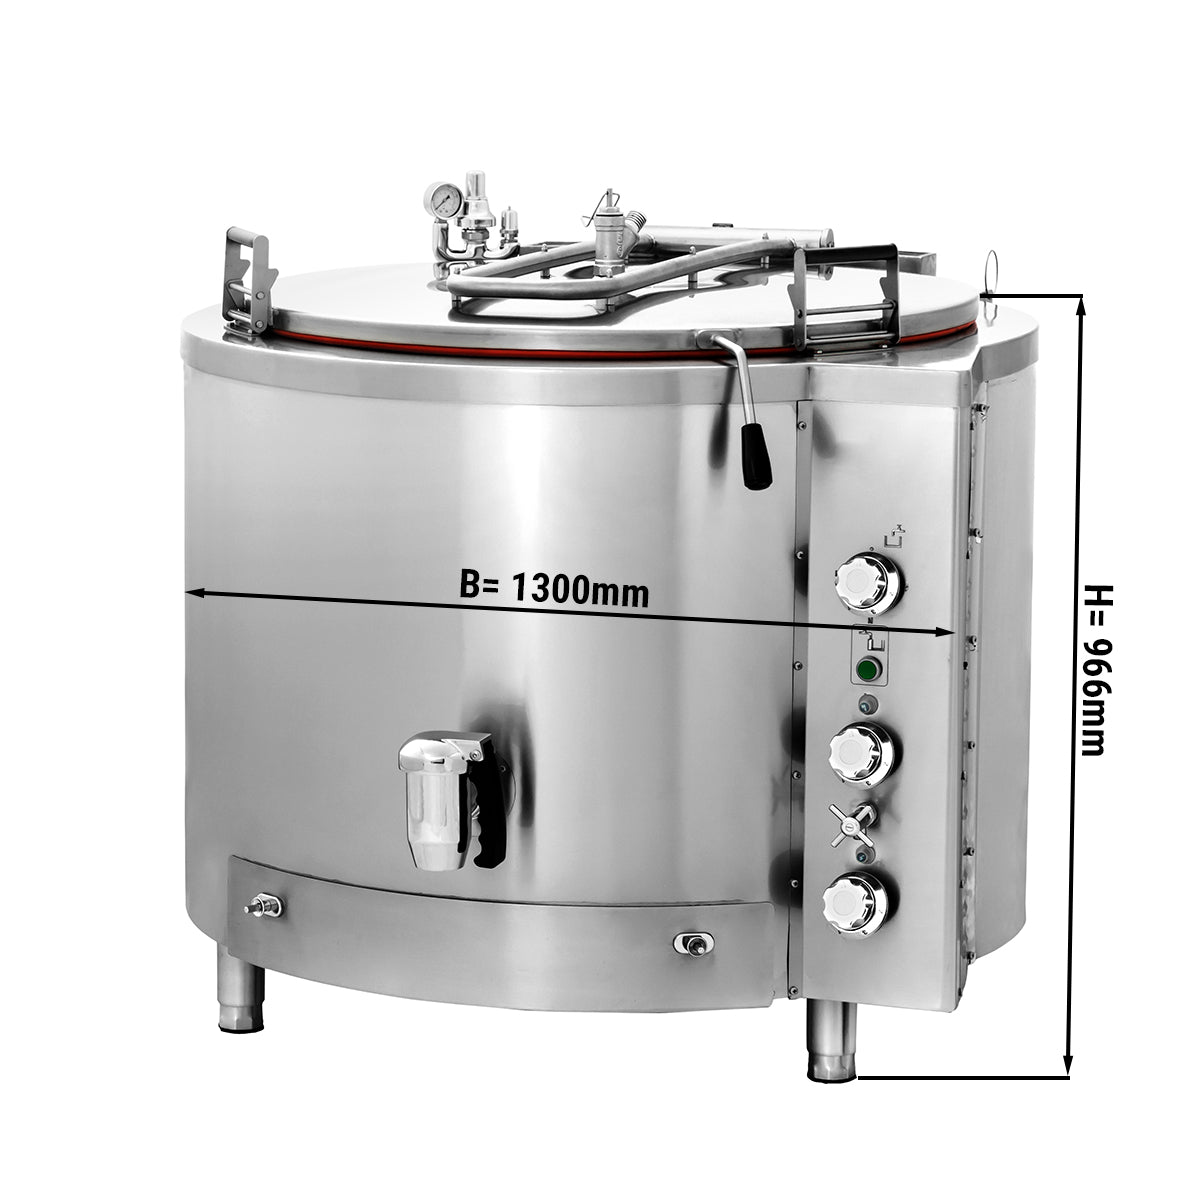 Gas kogekar - 500 liter - Indirekte opvarmning